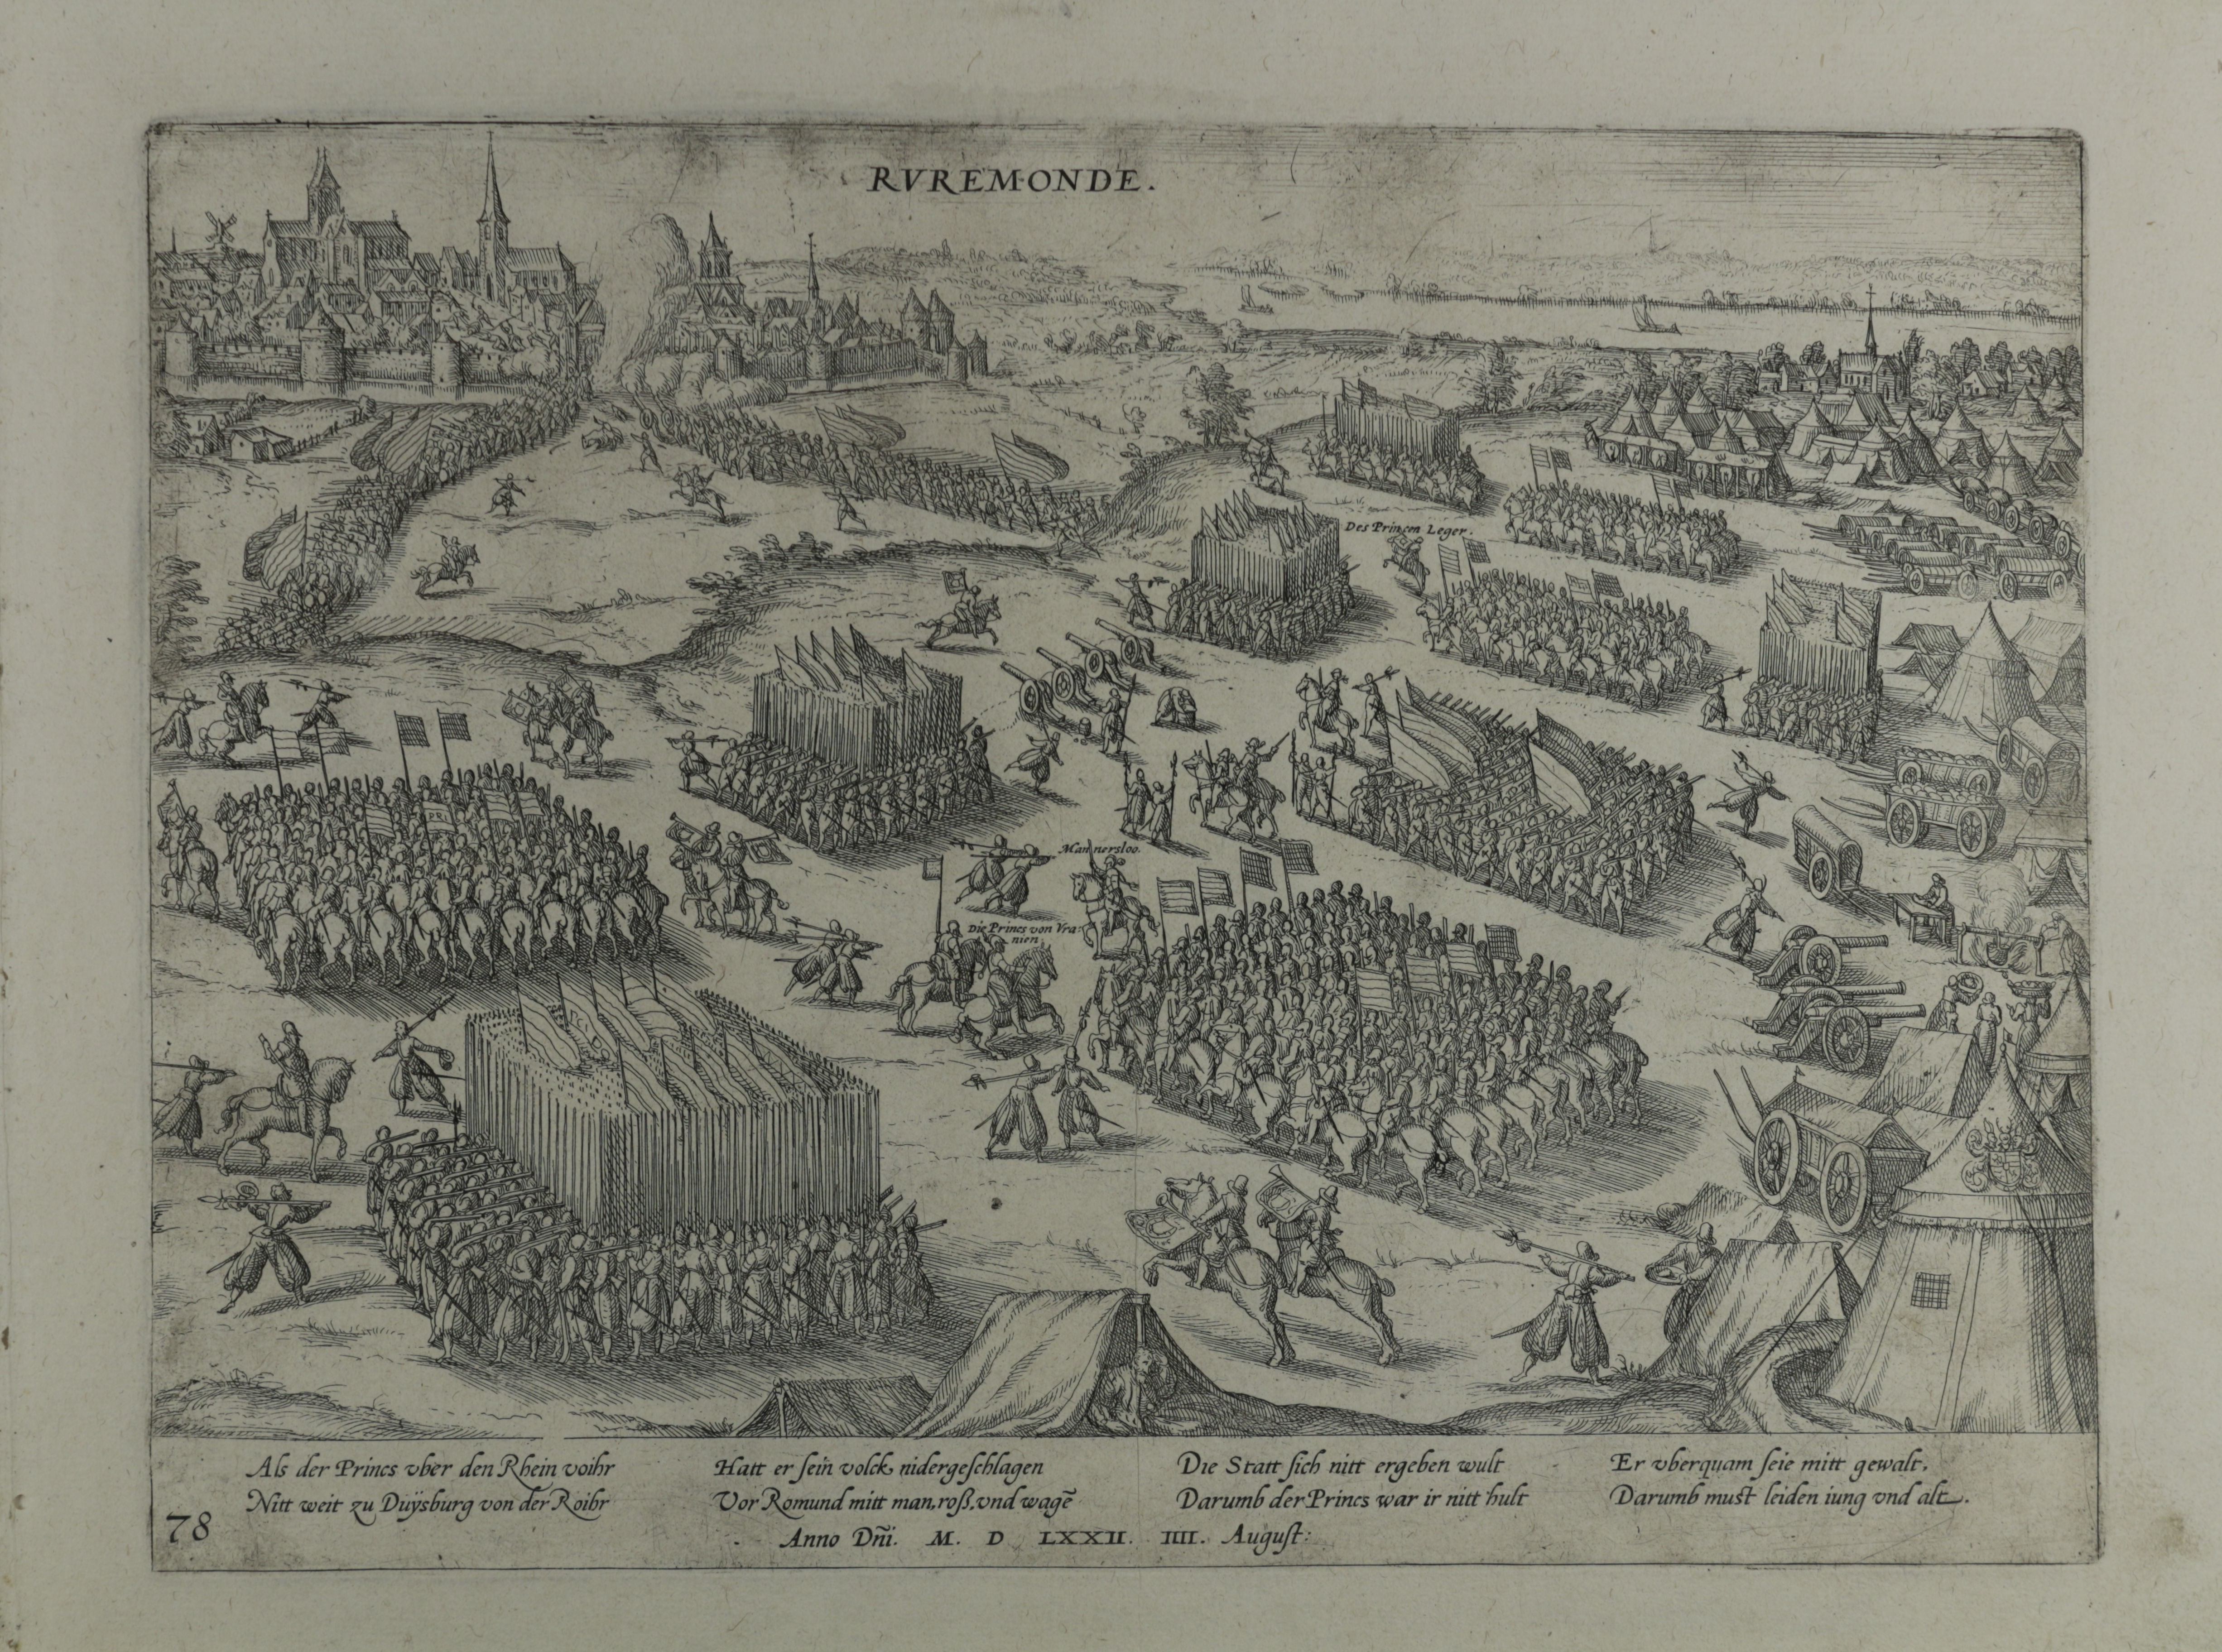 Kupferstich zur Einnahme von Roermond, August 1572 (Hogenberg) (Städtisches Museum Schloss Rheydt CC BY)